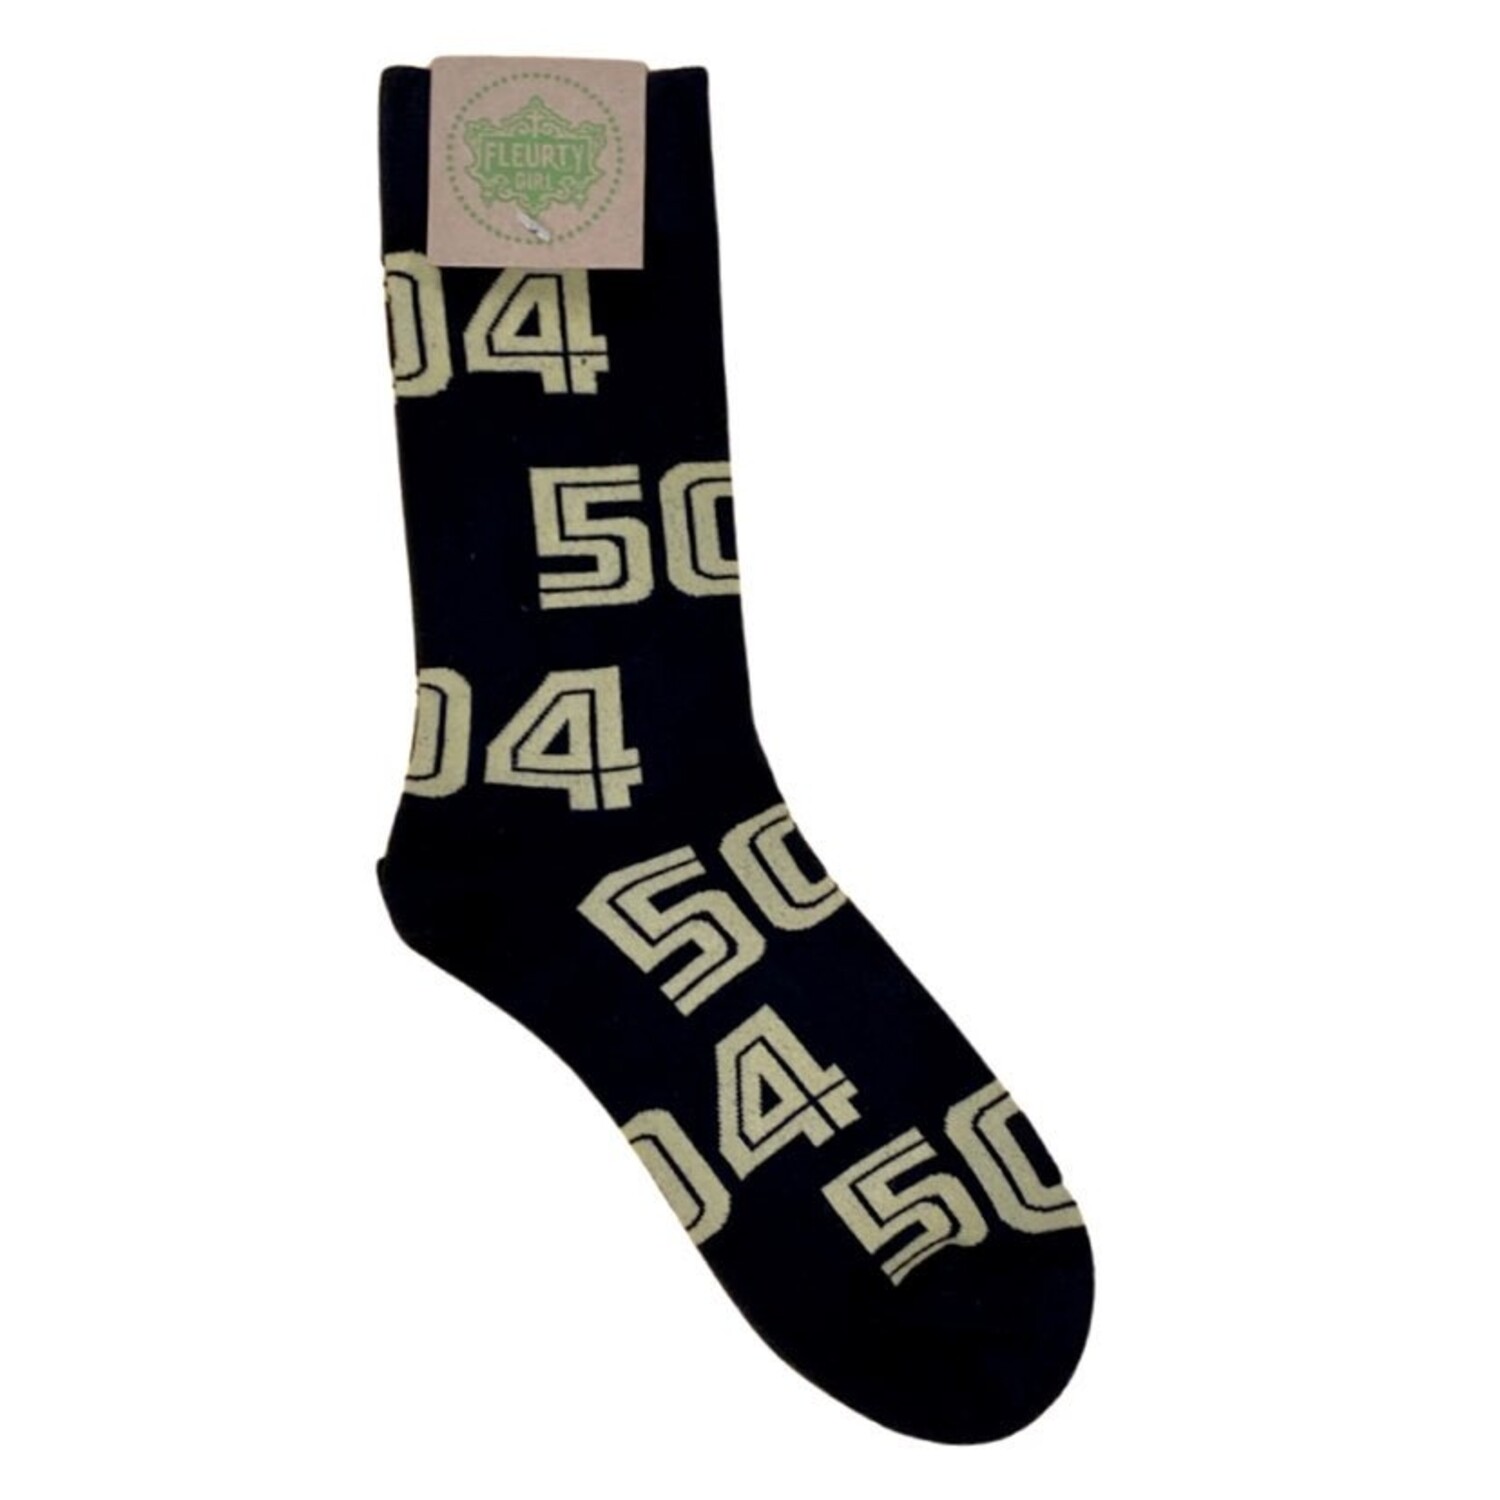 504 Socks, Black & Gold - Fleurty Girl